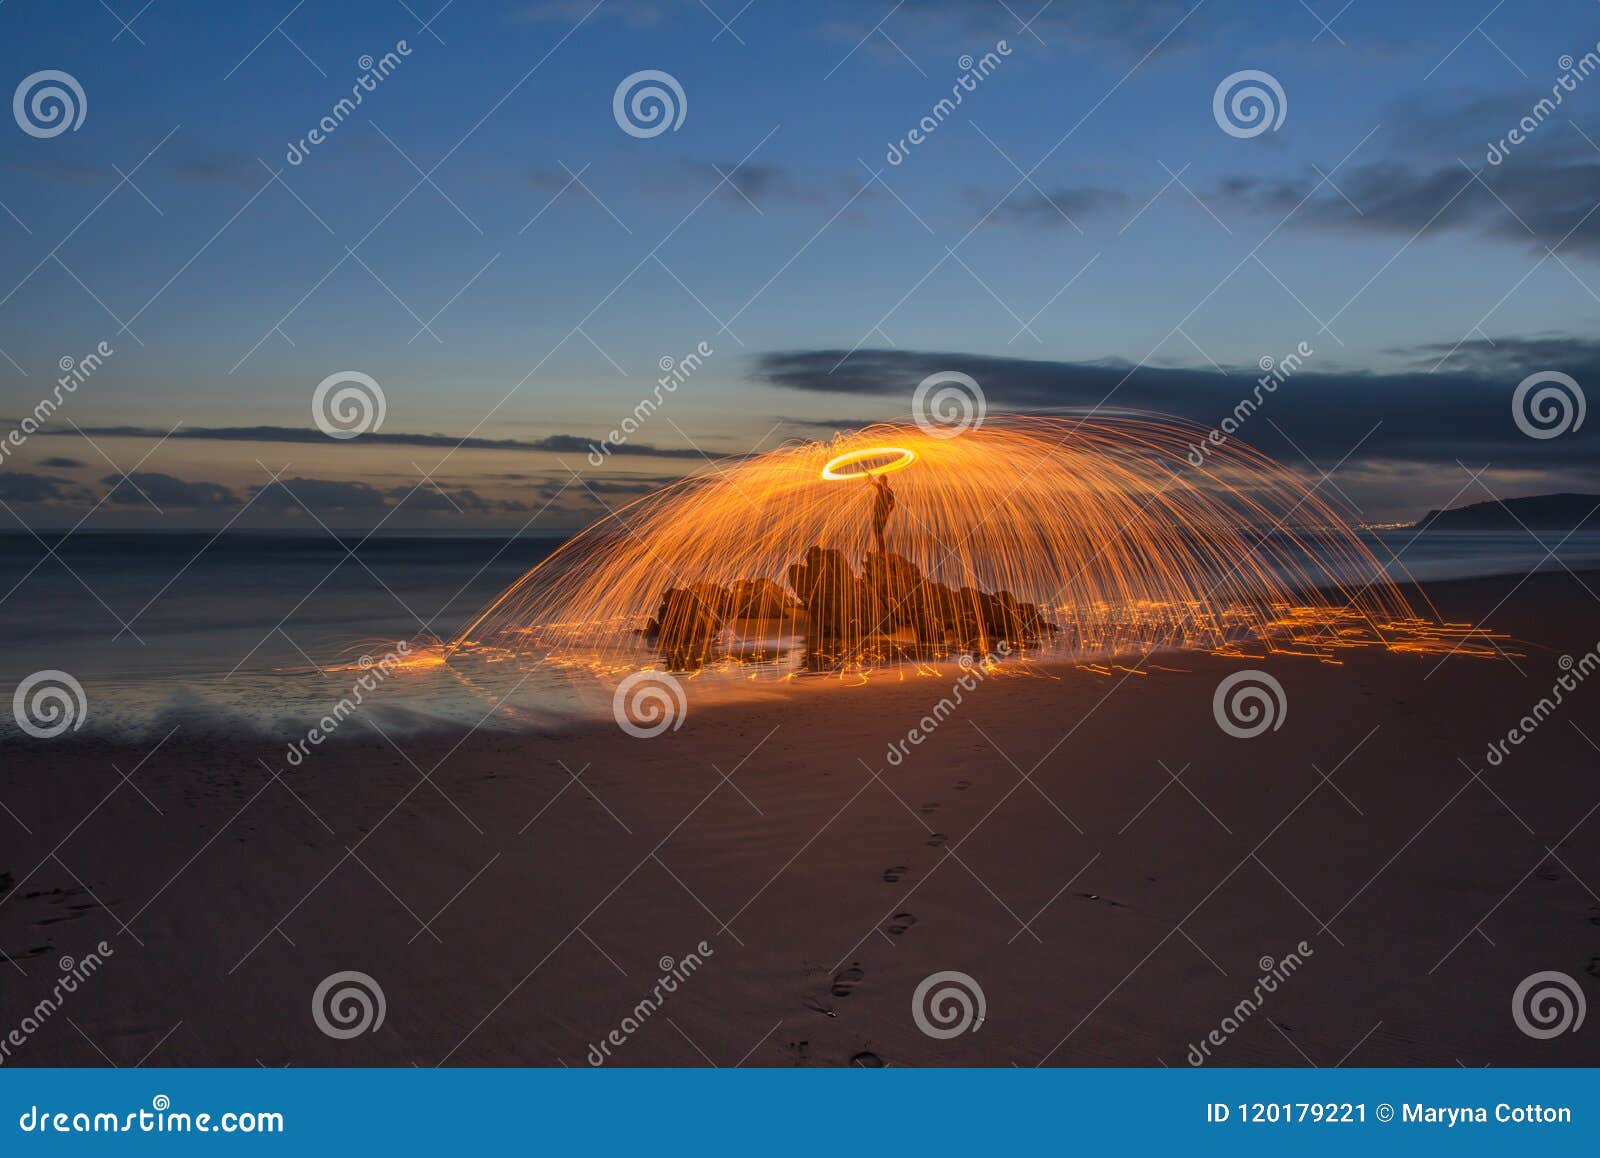 Den härliga Lightpainted orben med flyg gristrar på en strand med en varm solnedgång i bakgrunden